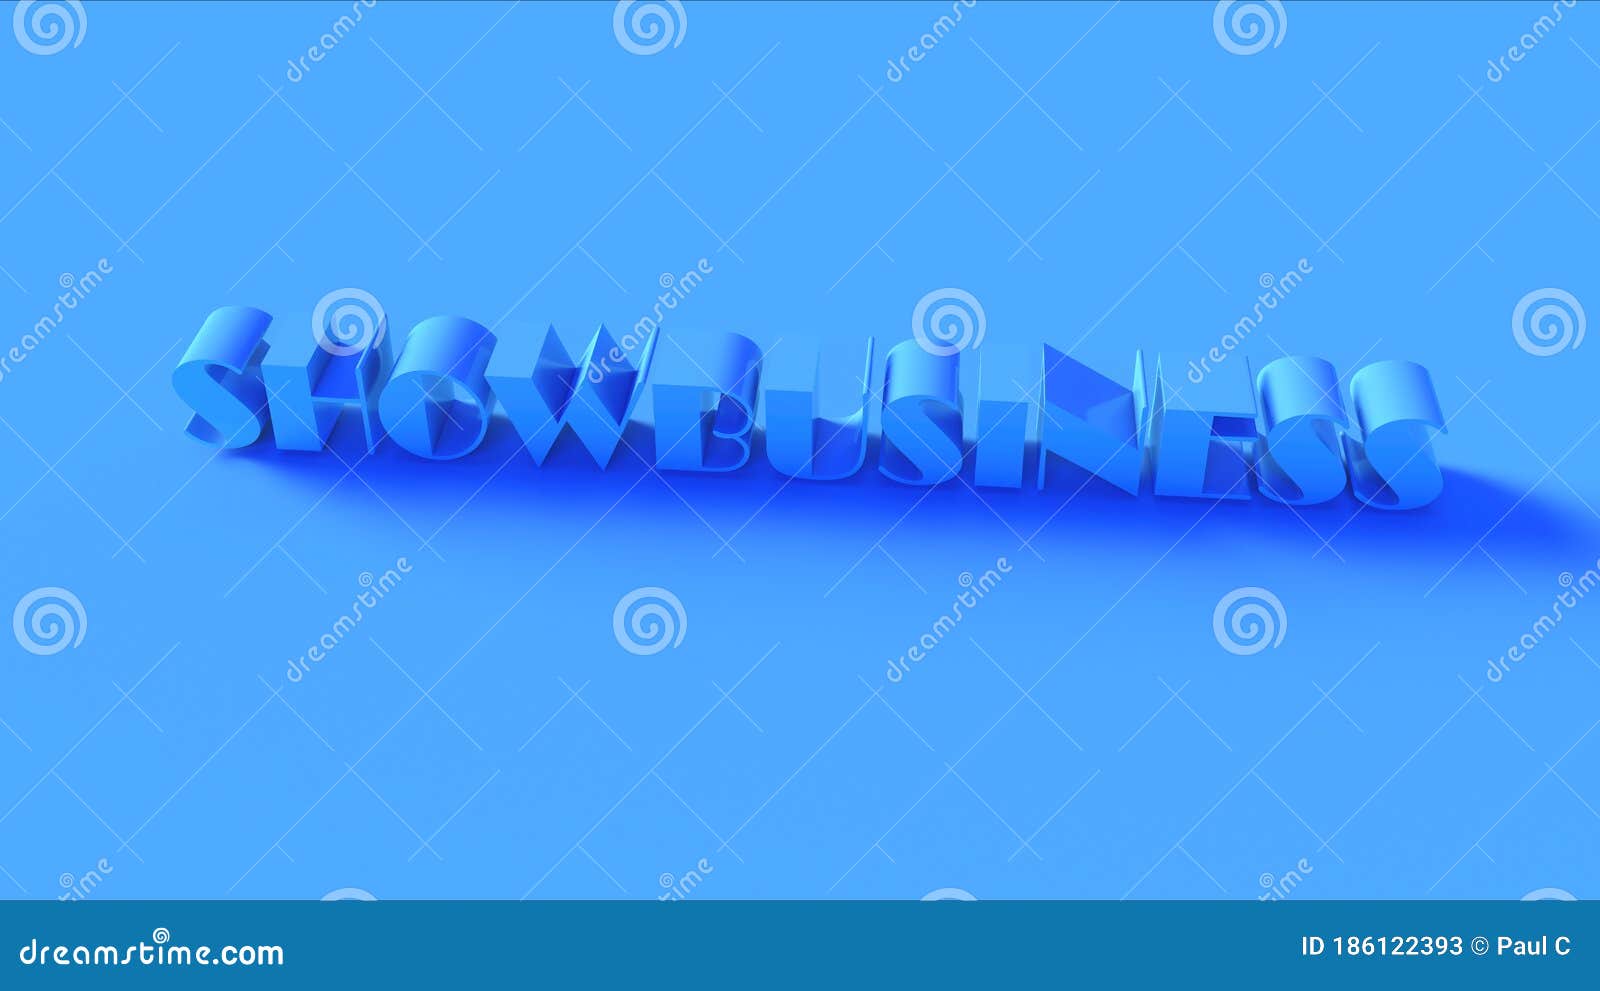 bright blue 3d showbusiness sign